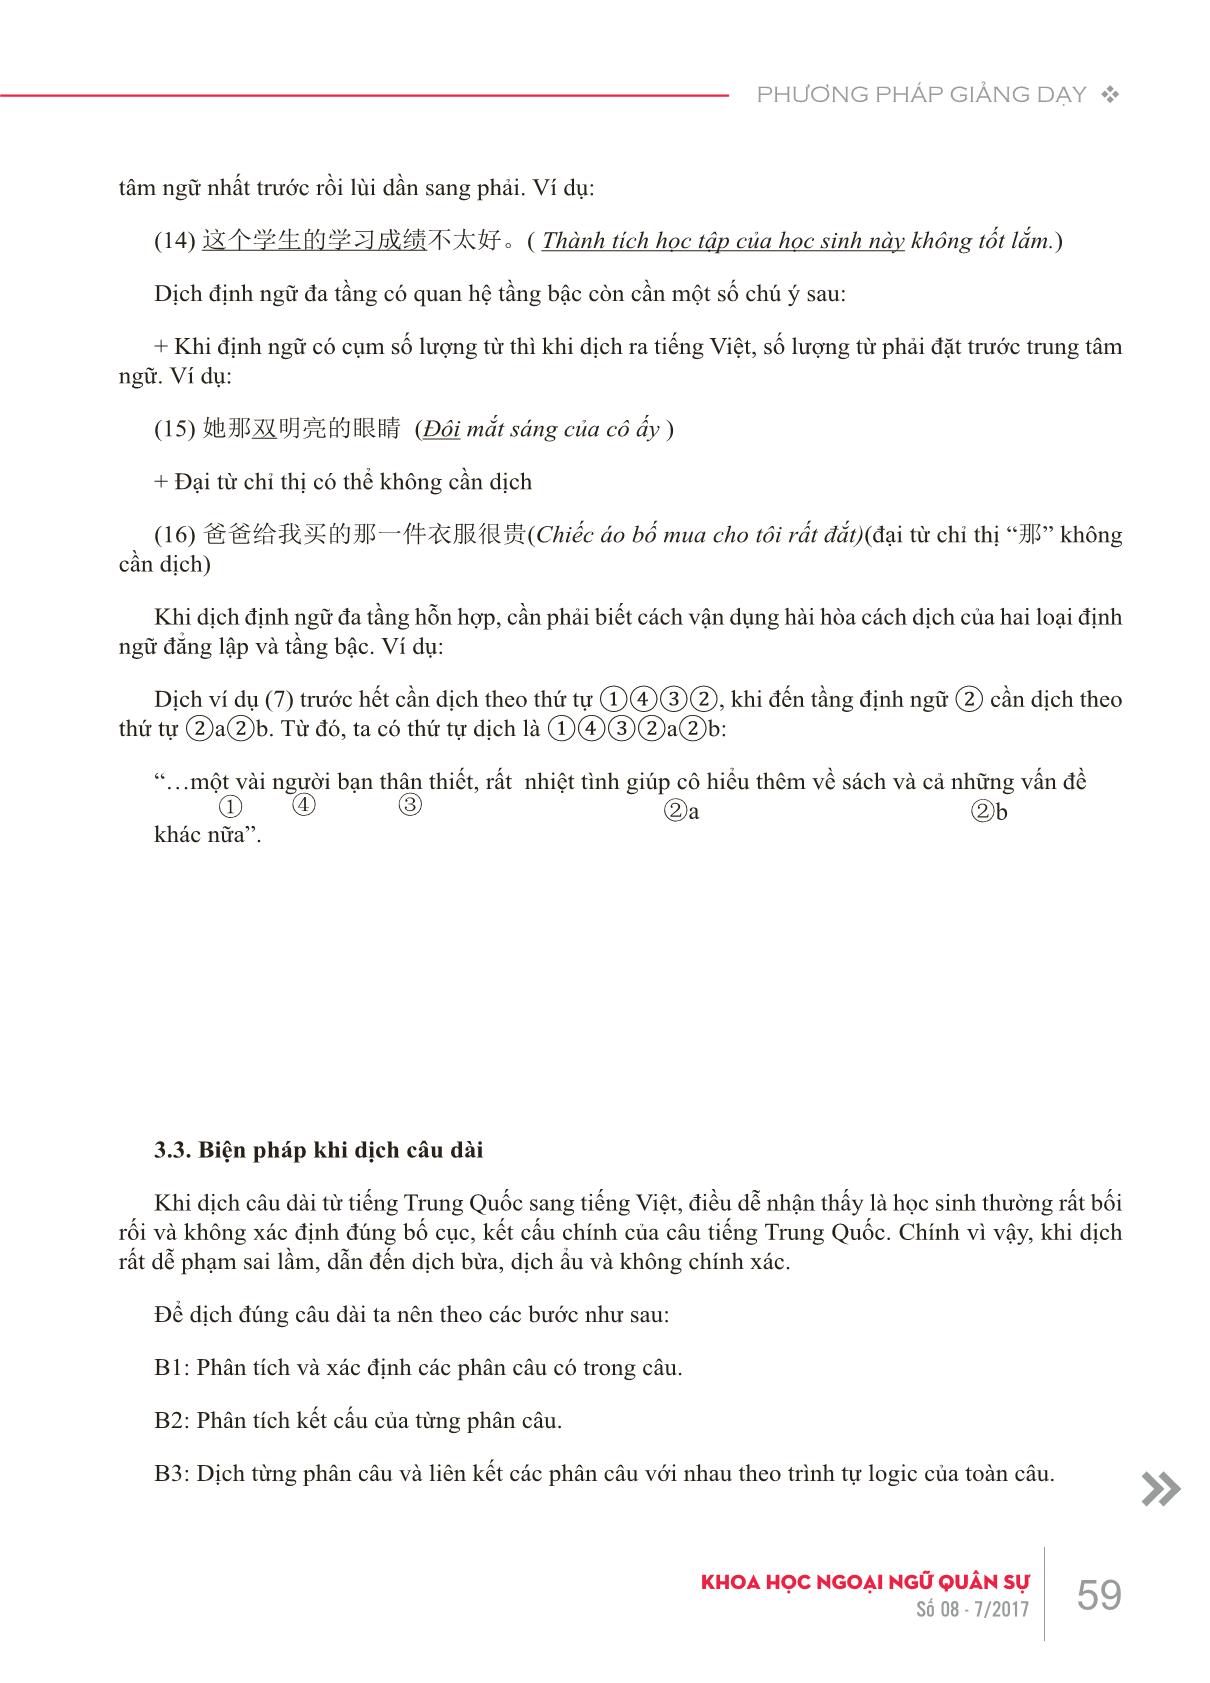 Những lỗi sai thường gặp của sinh viên khi dịch viết Hán-Việt do hạn chế về kiến thức ngôn ngữ và giải pháp trong giảng dạy trang 6